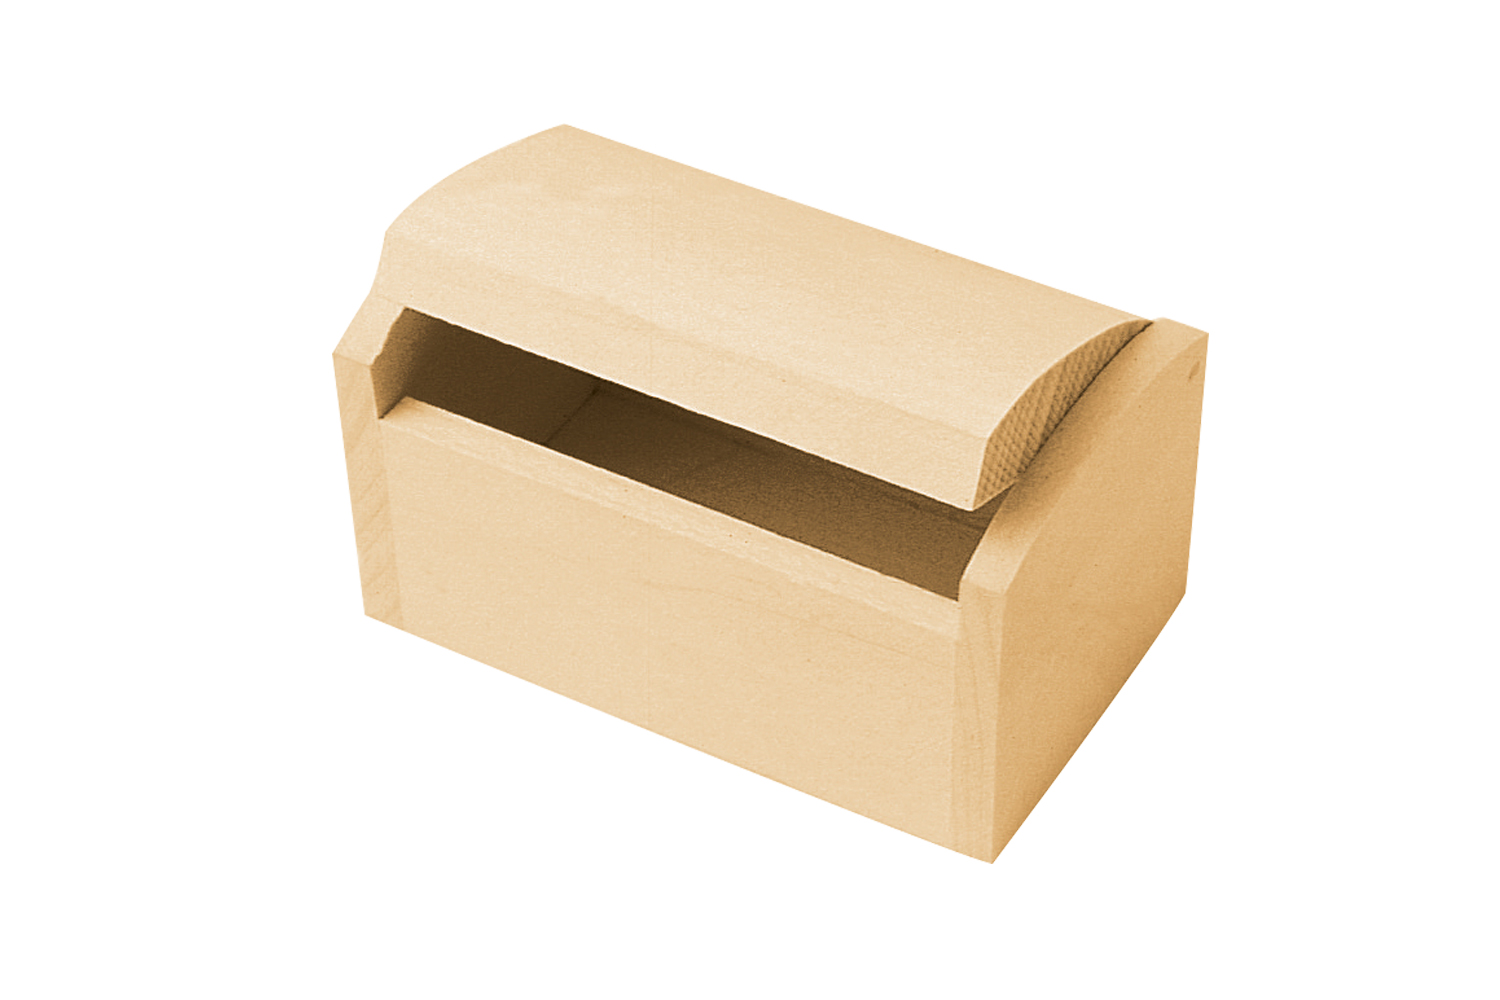 La Boîte de couleurs - Coffret en bois de nécessaire à dessin